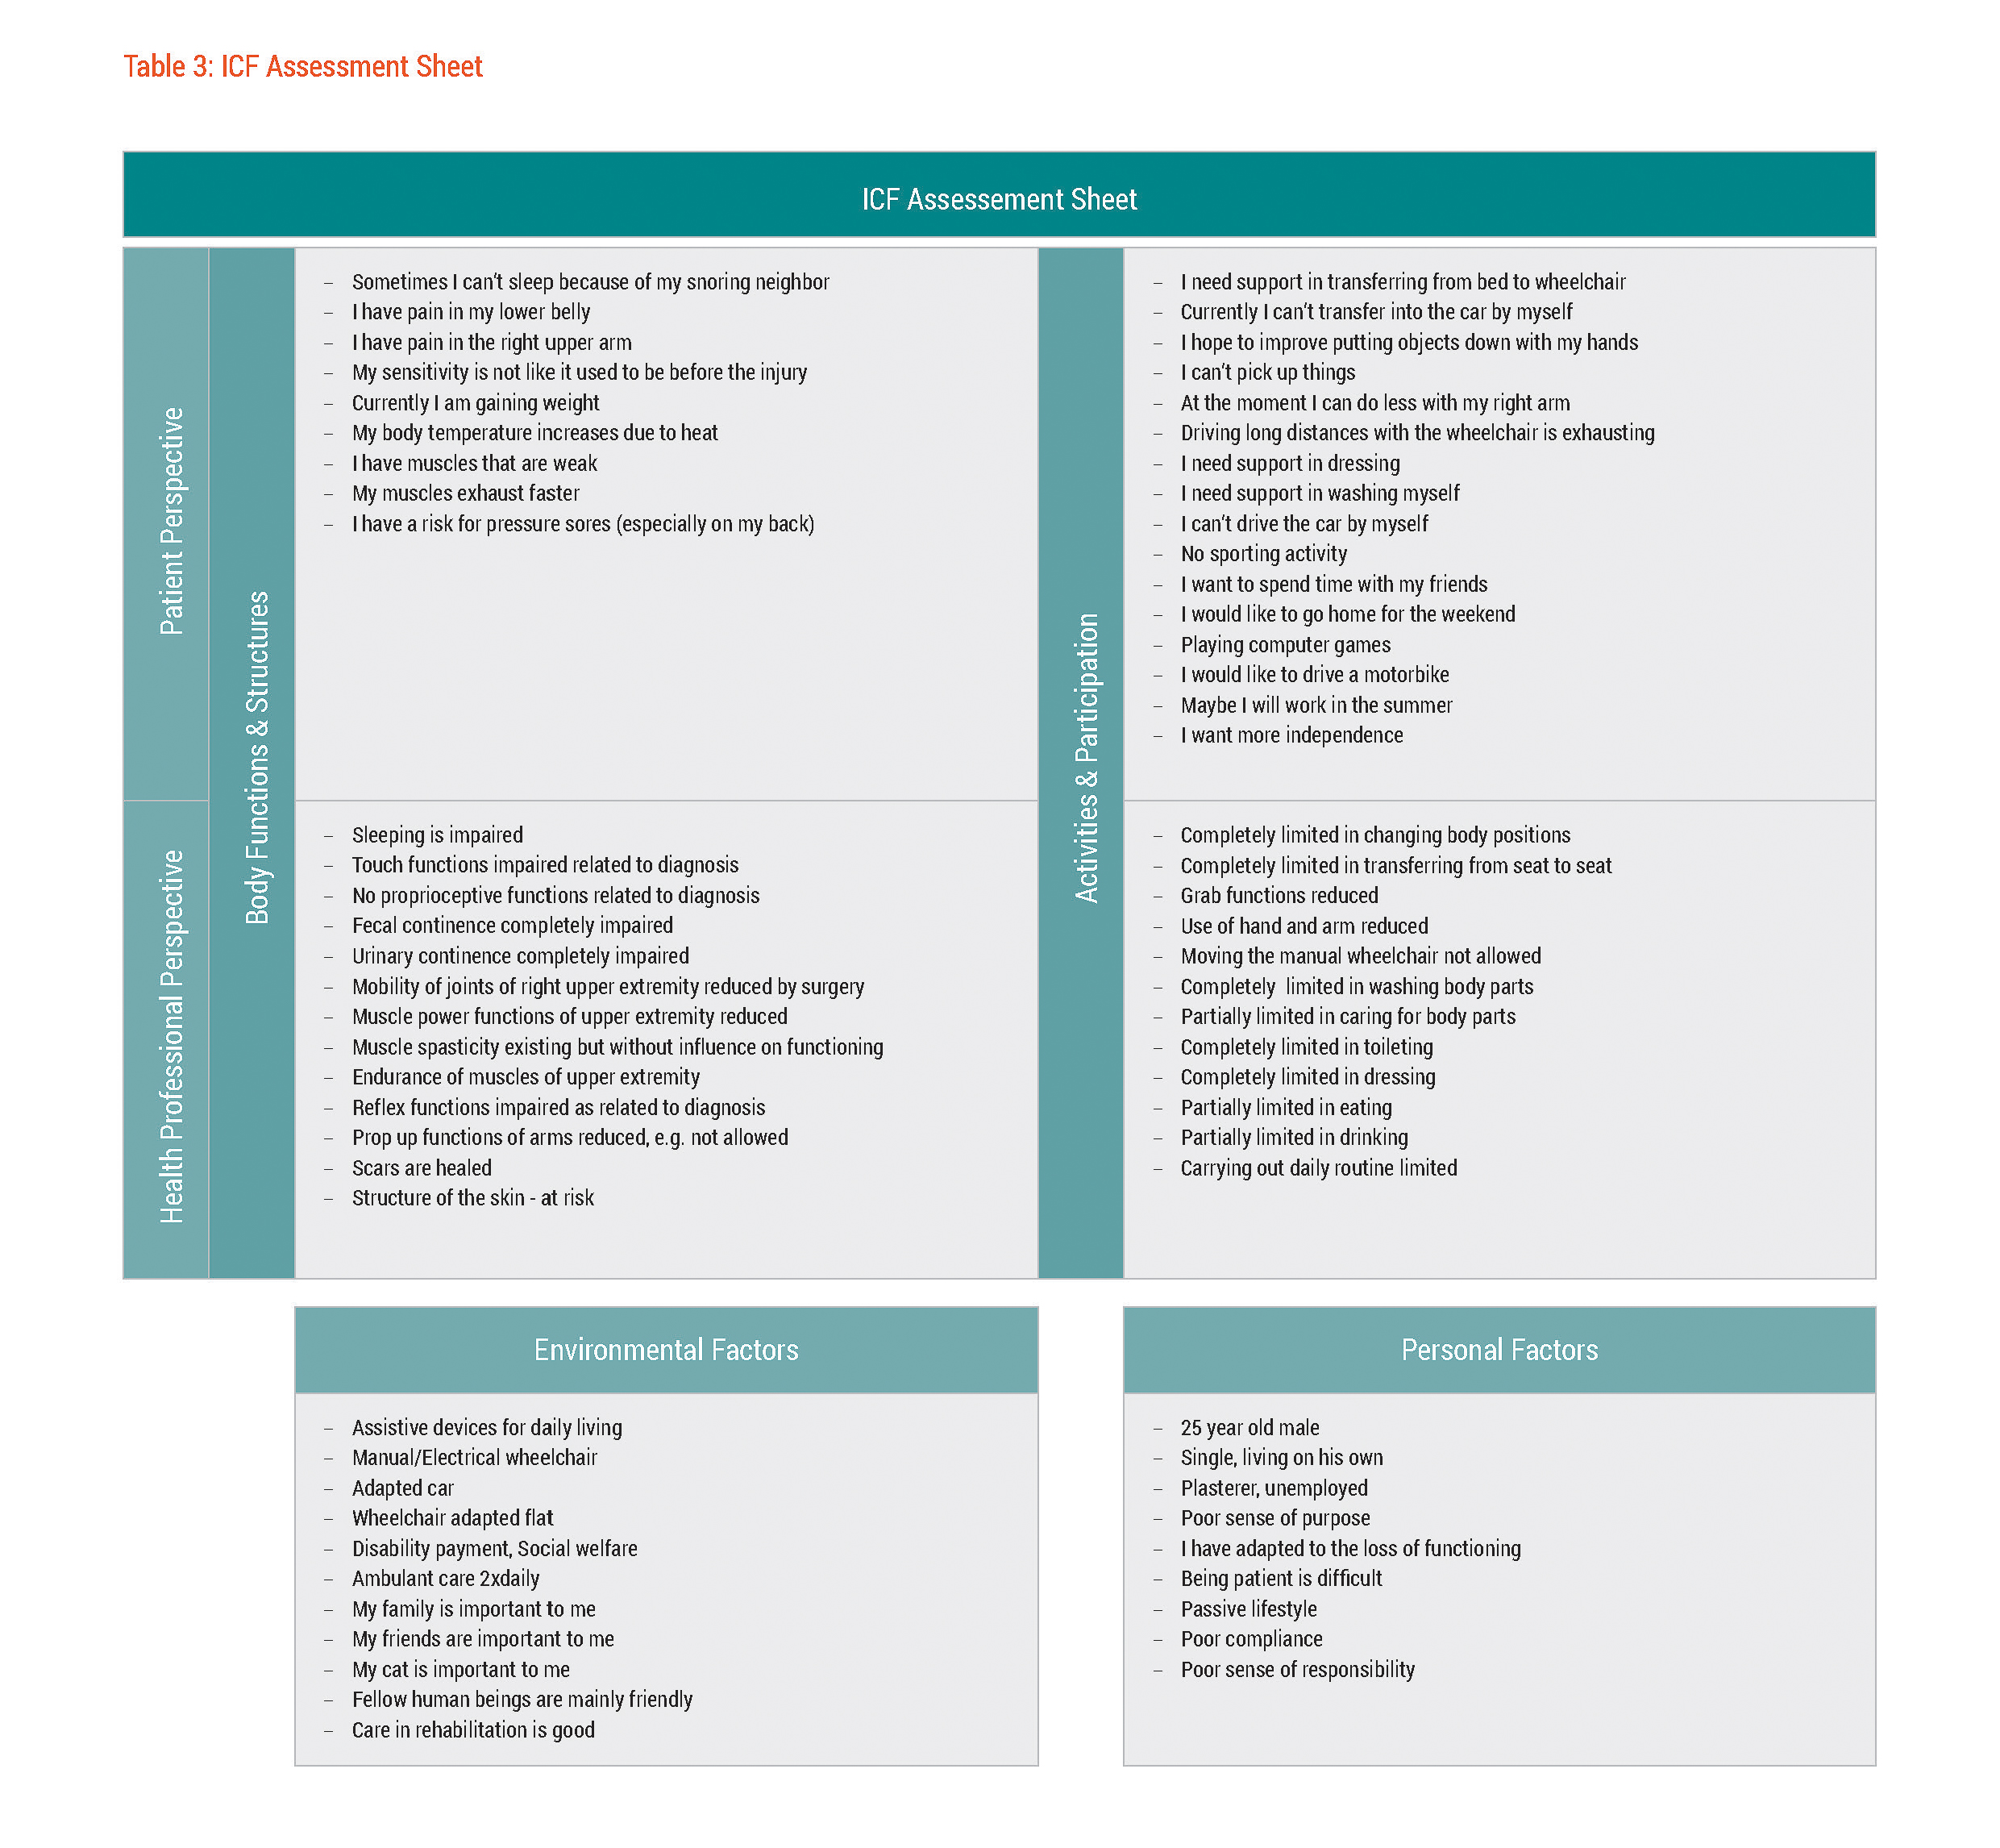 Figure 1: ICF Assessment Sheet